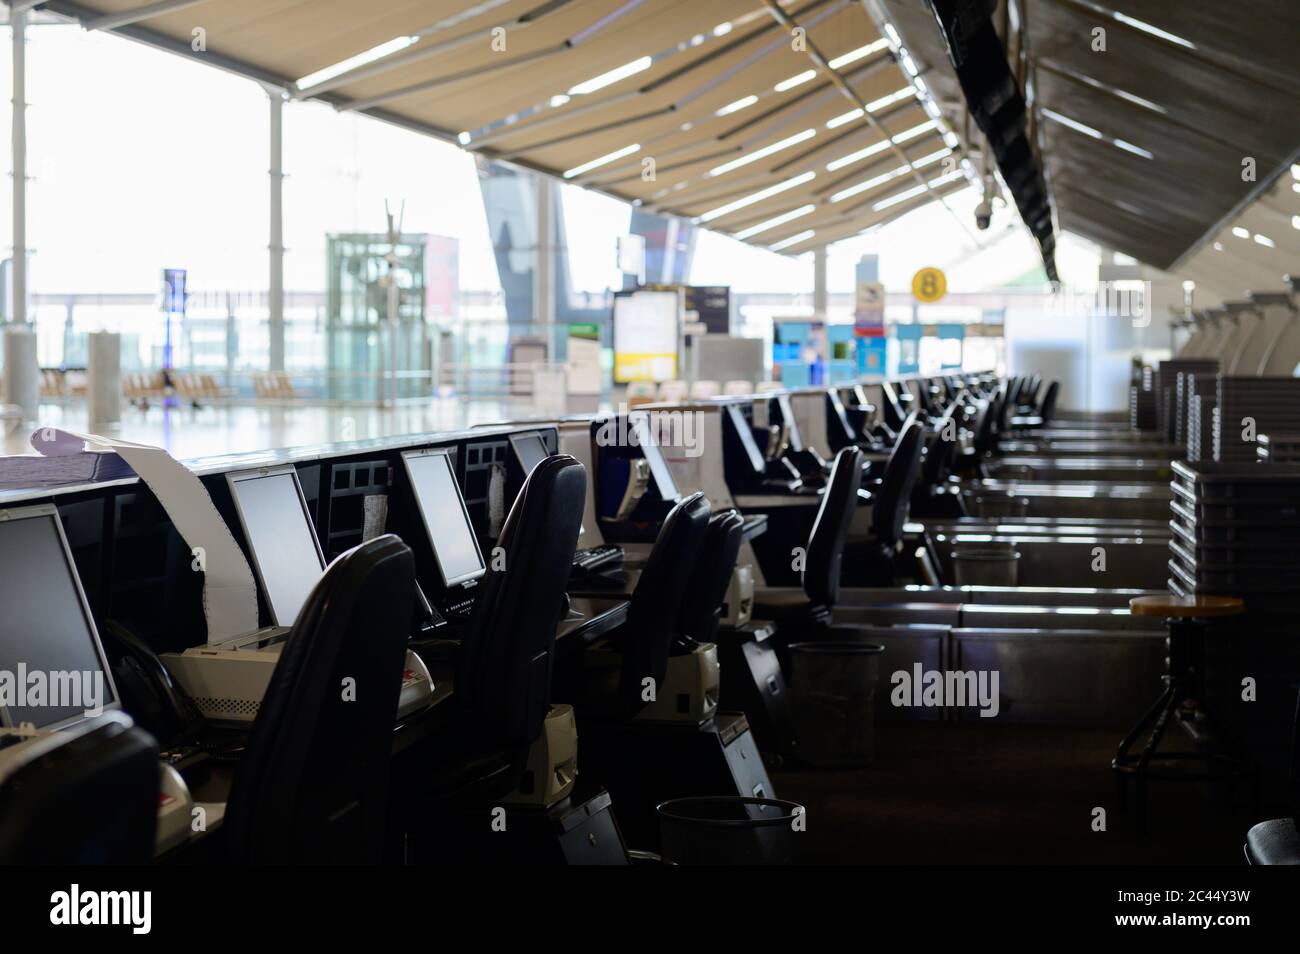 Fila de mostradores de facturación vacíos con monitores de ordenador en el aeropuerto Foto de stock